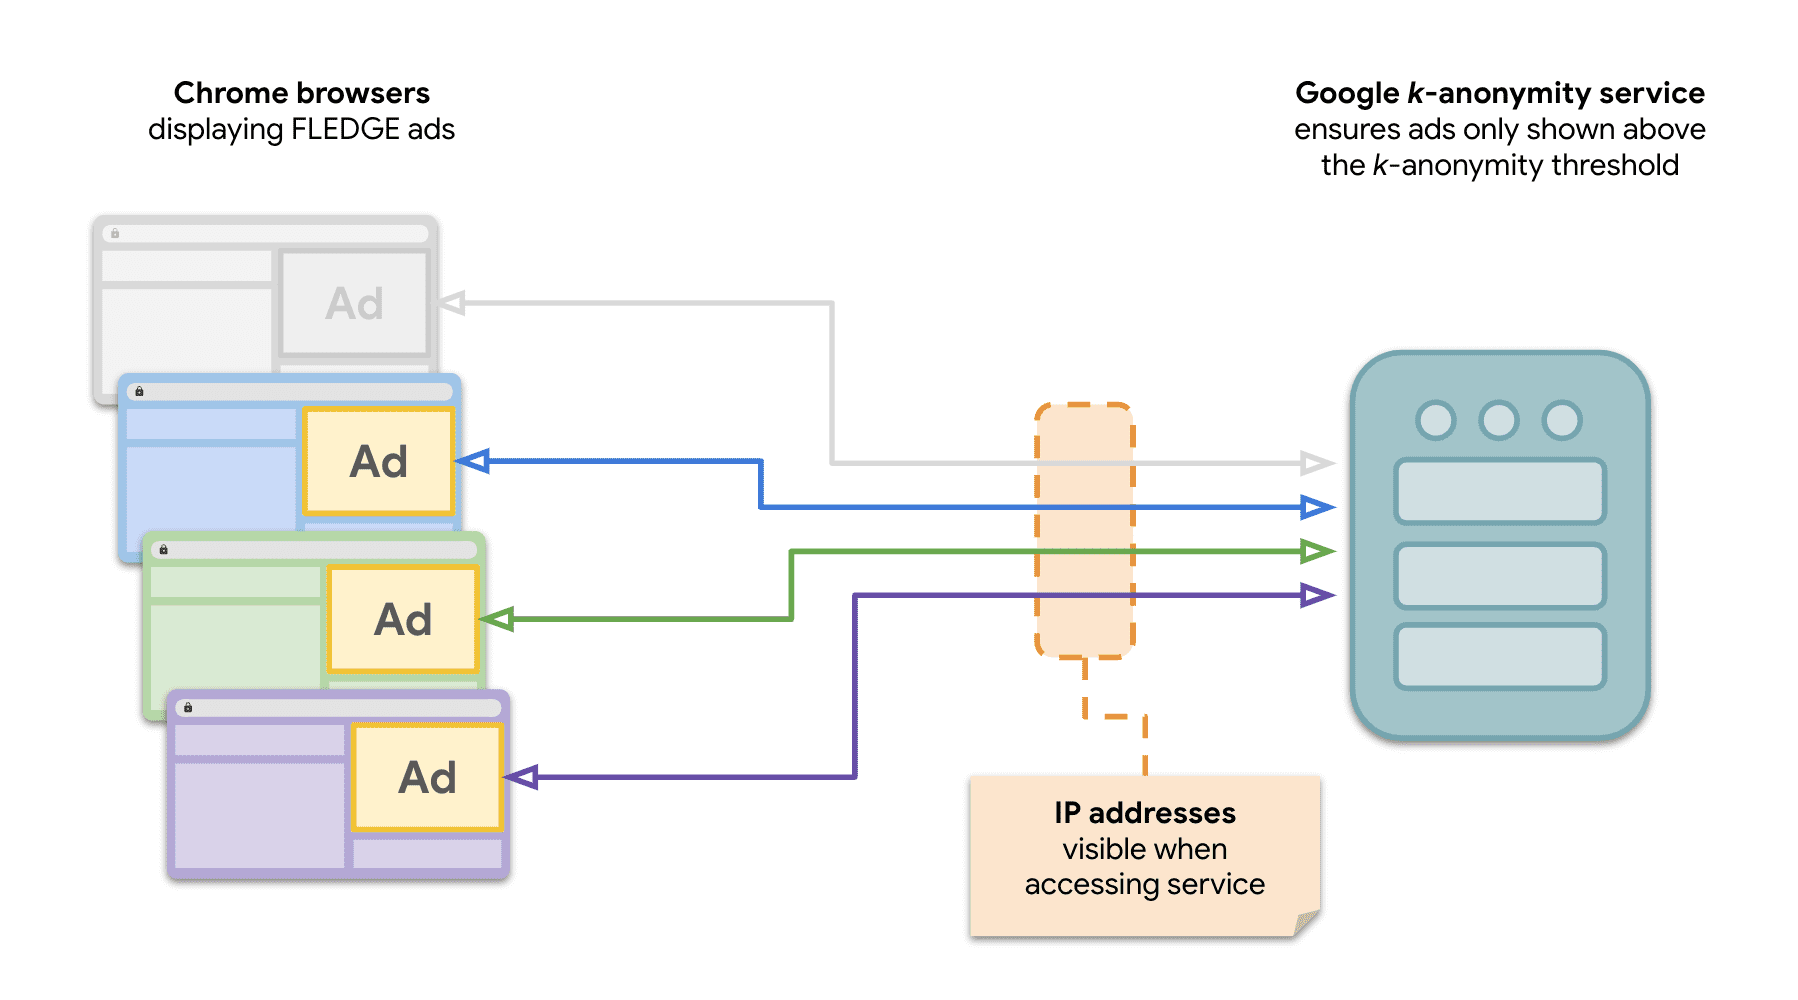 Diagramma che mostra che più siti in Chrome inviano richieste al server k-anonymity per pubblicare annunci FLEDGE.